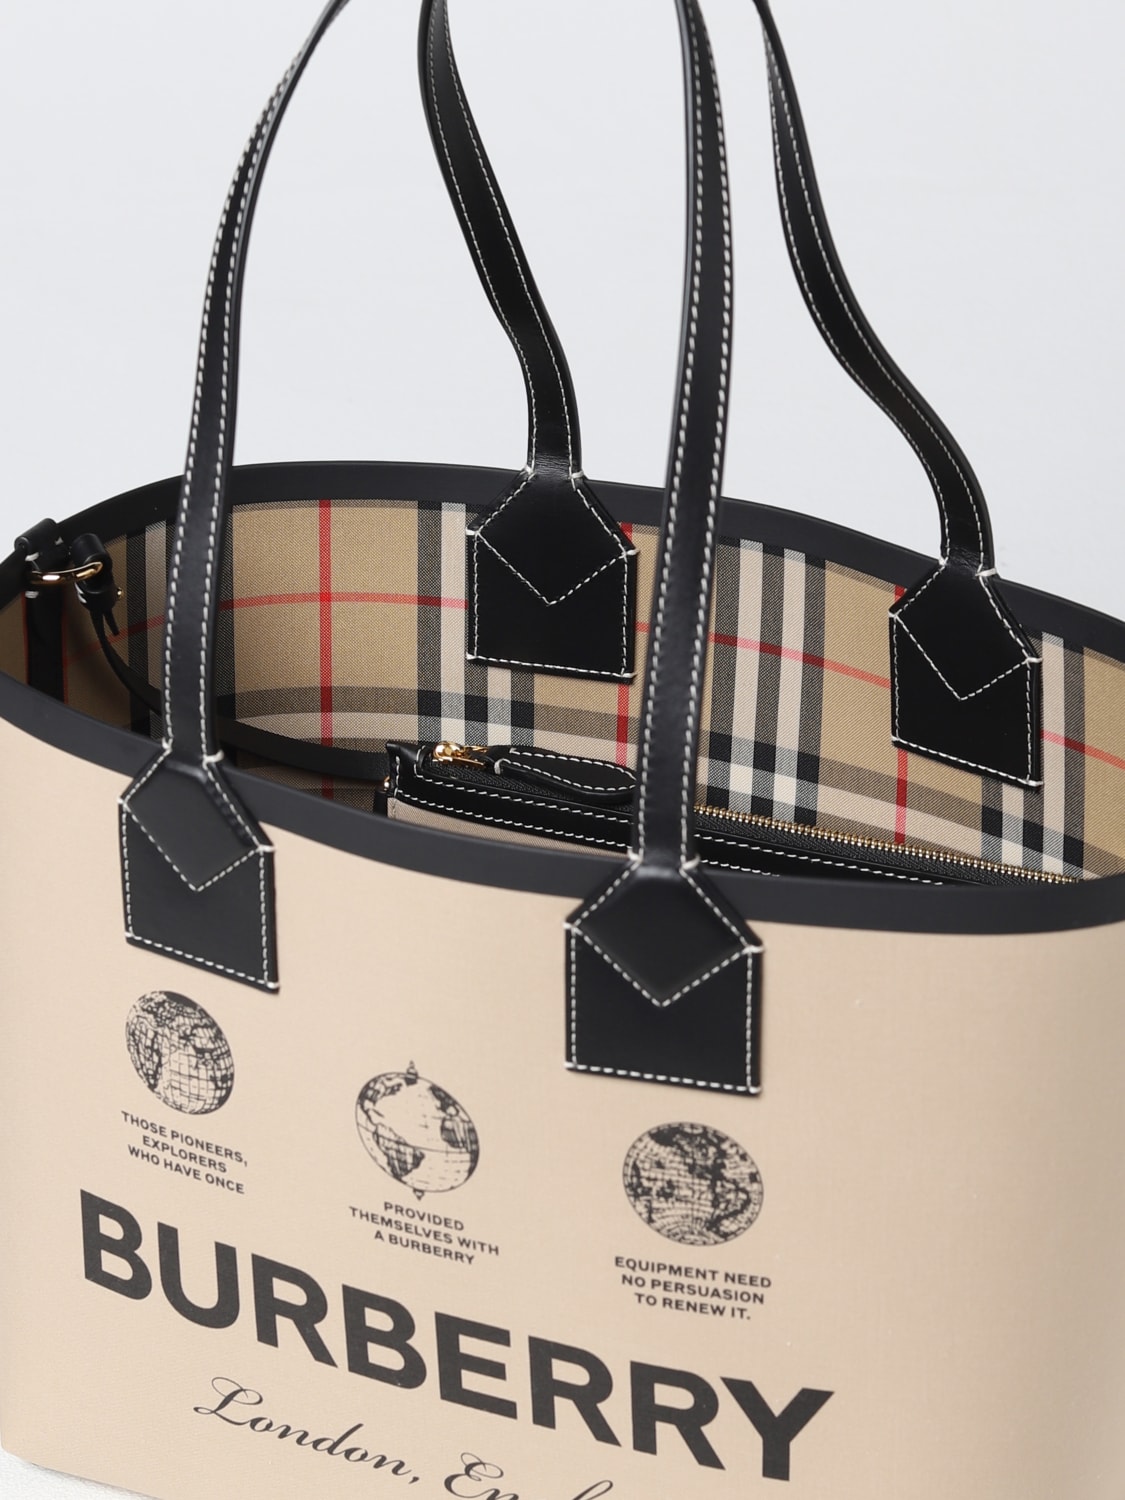 BURBERRY LONDON NEVER FULL HANDBAG  Burberry london, Handbag, Burberry bag